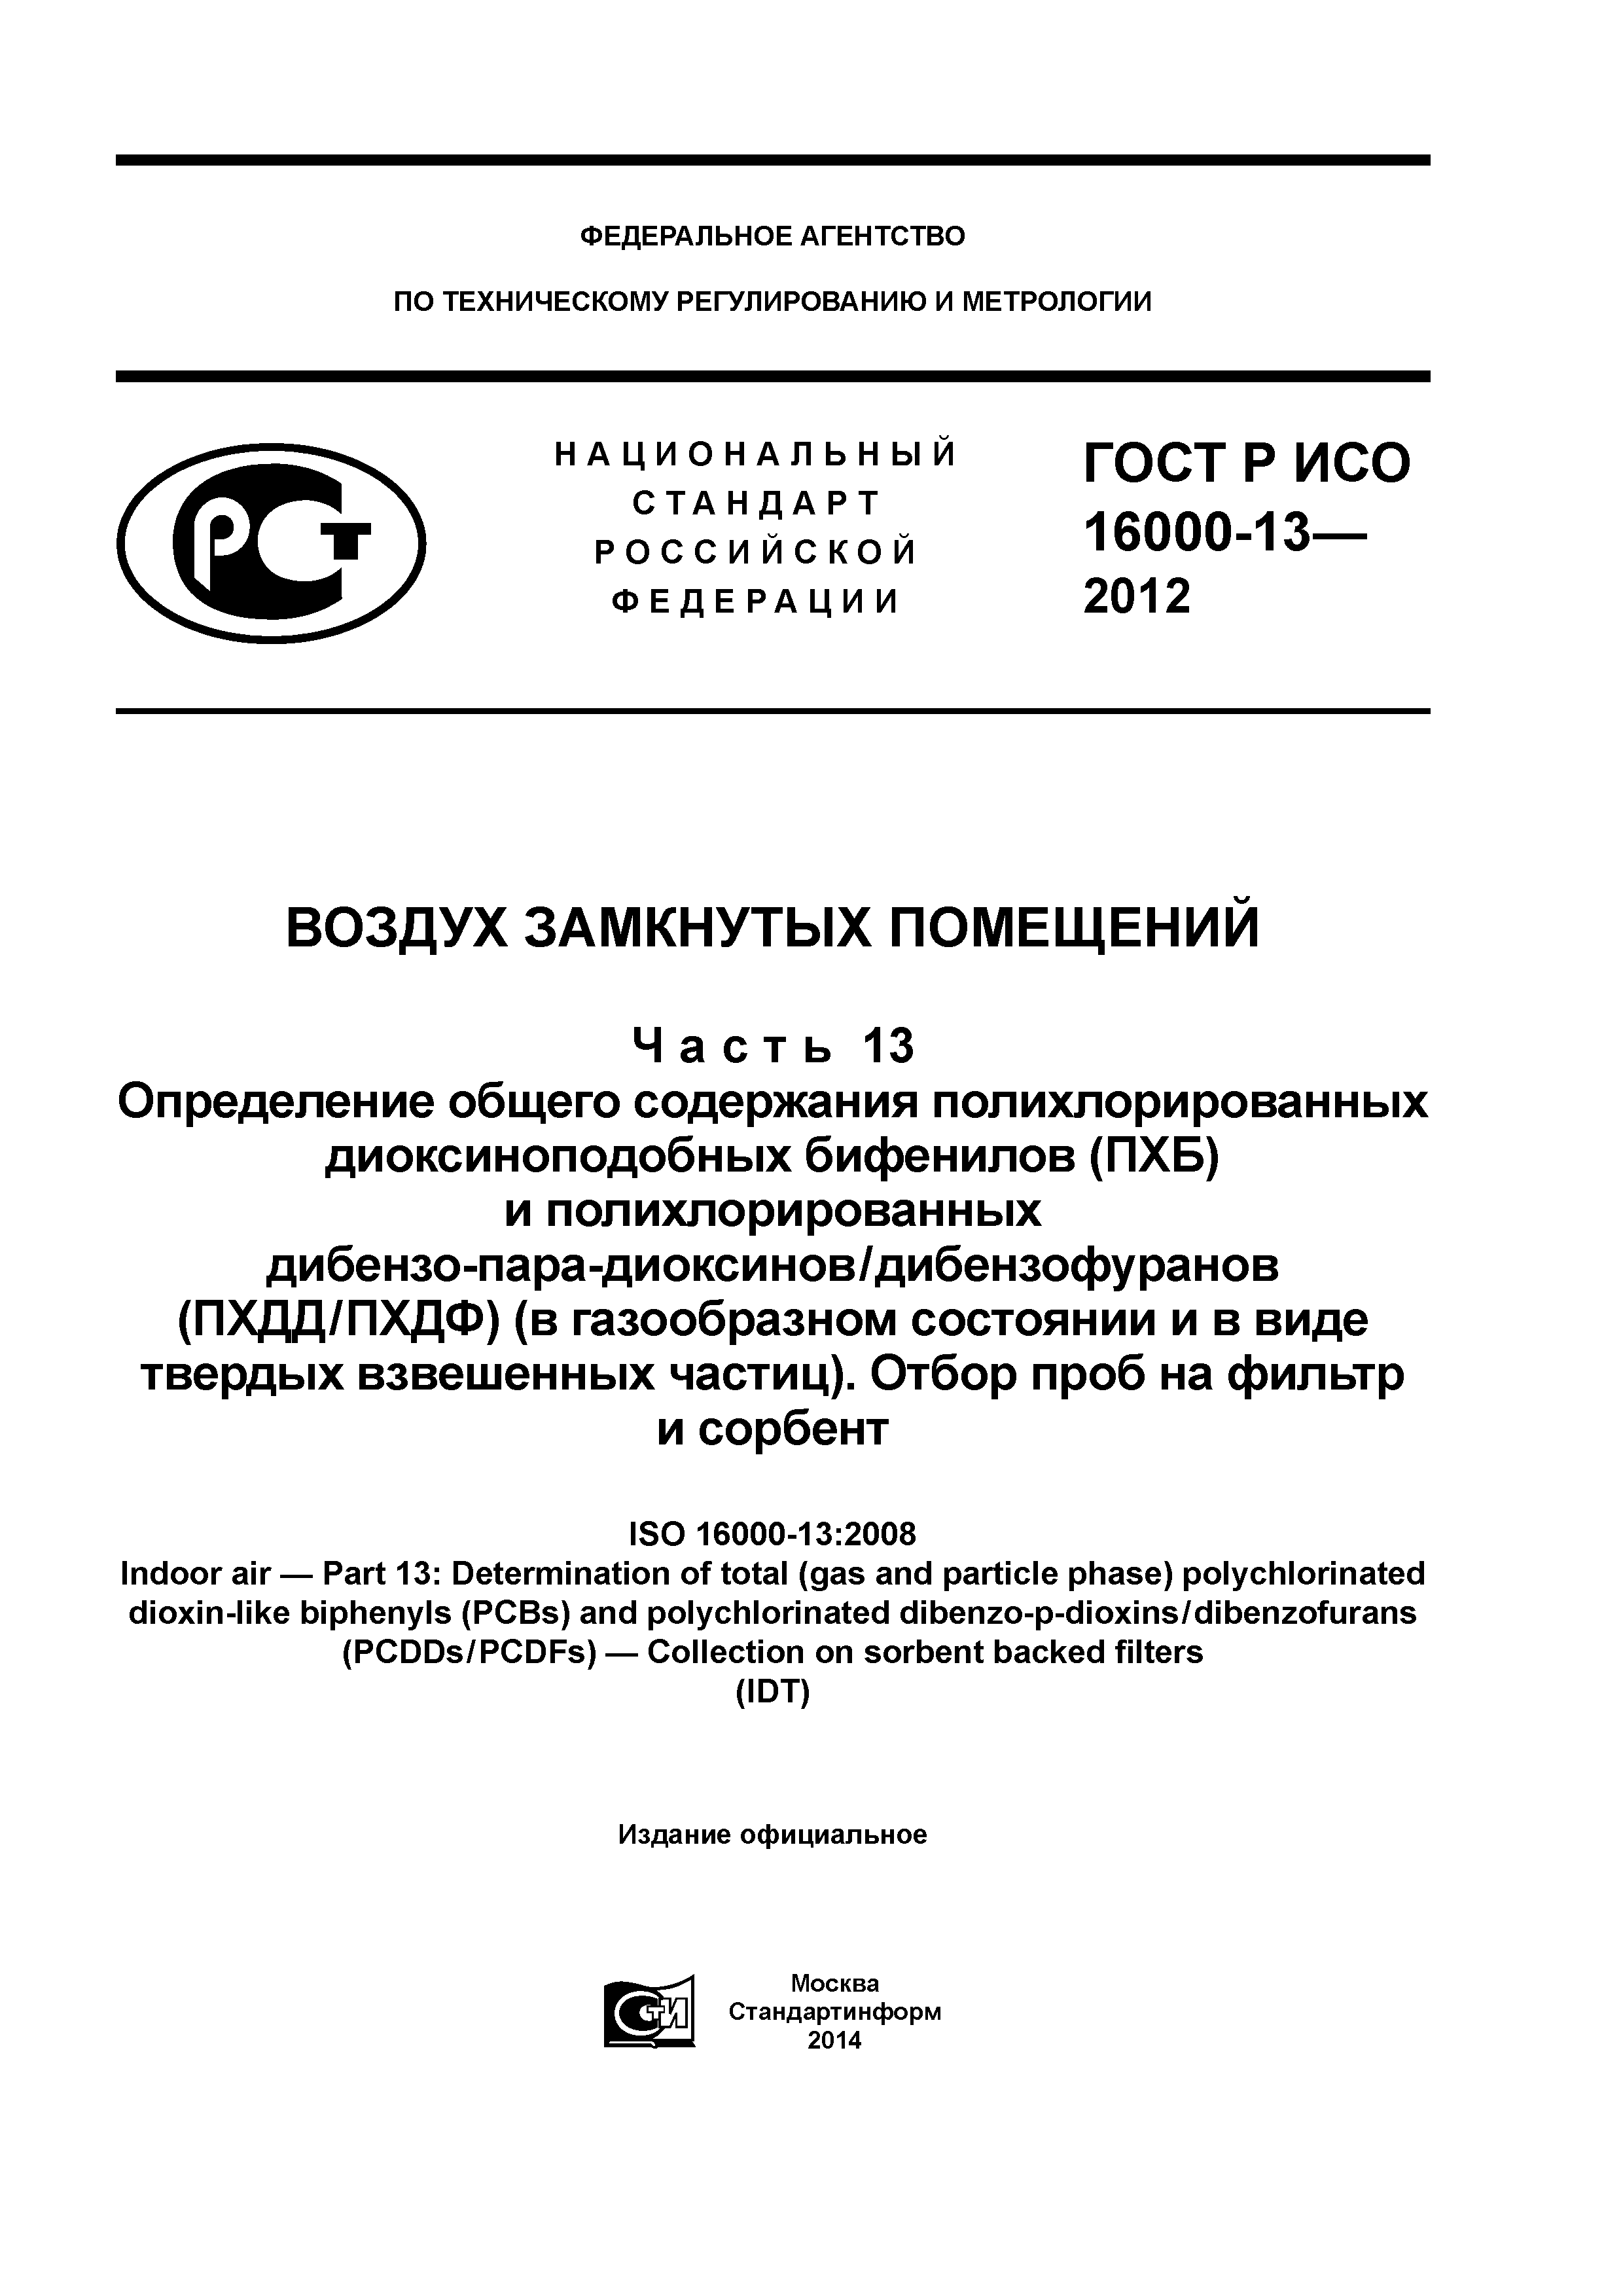 ГОСТ Р ИСО 16000-13-2012